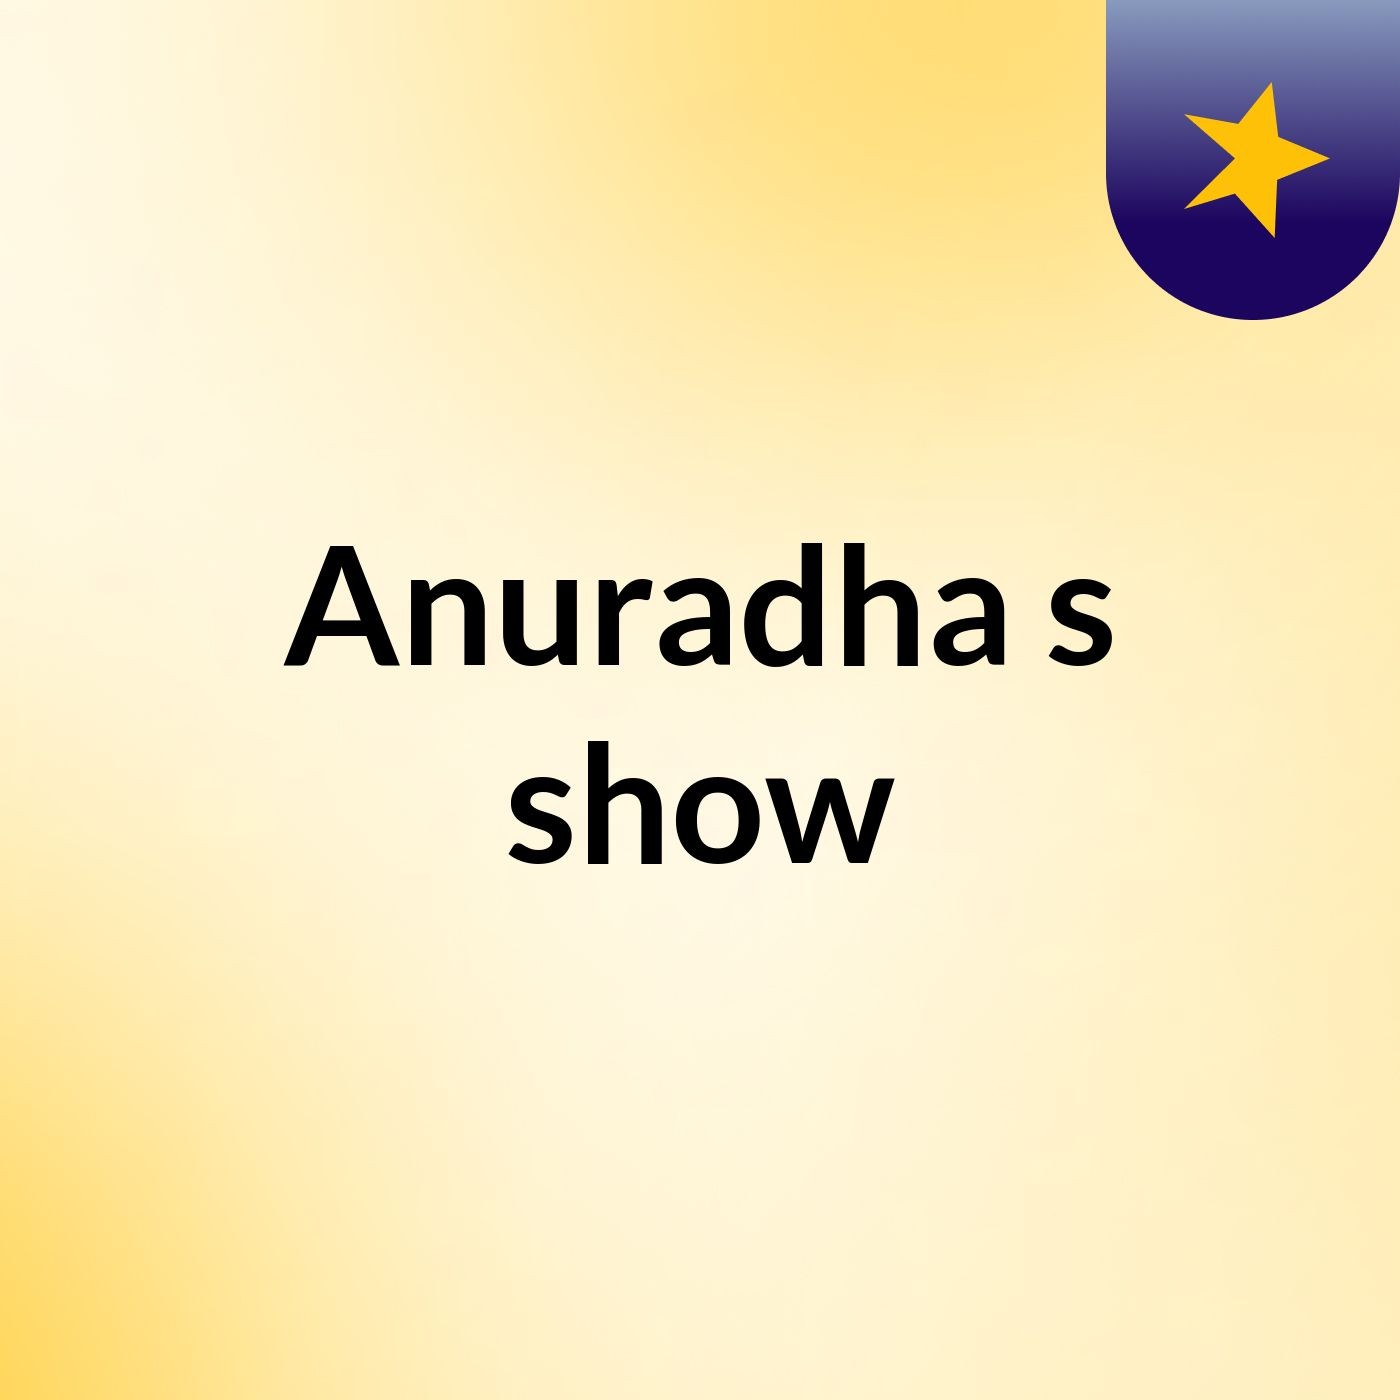 Anuradha's show